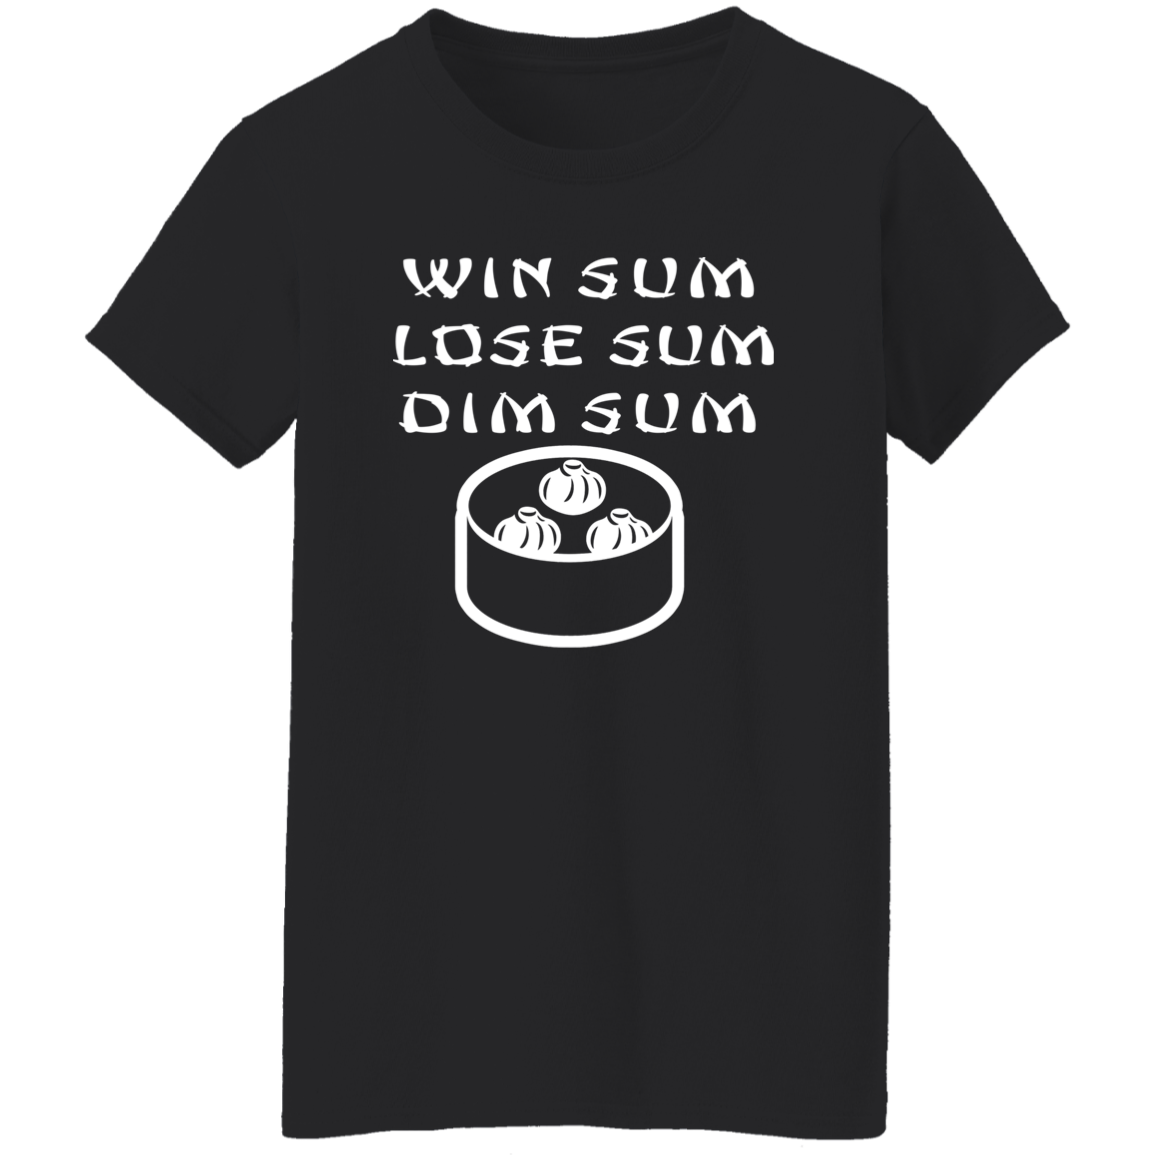 ArtichokeUSA Custom Design. WIN SUM. LOSE SUM. DIM SUM. Ladies' 5.3 oz. T-Shirt